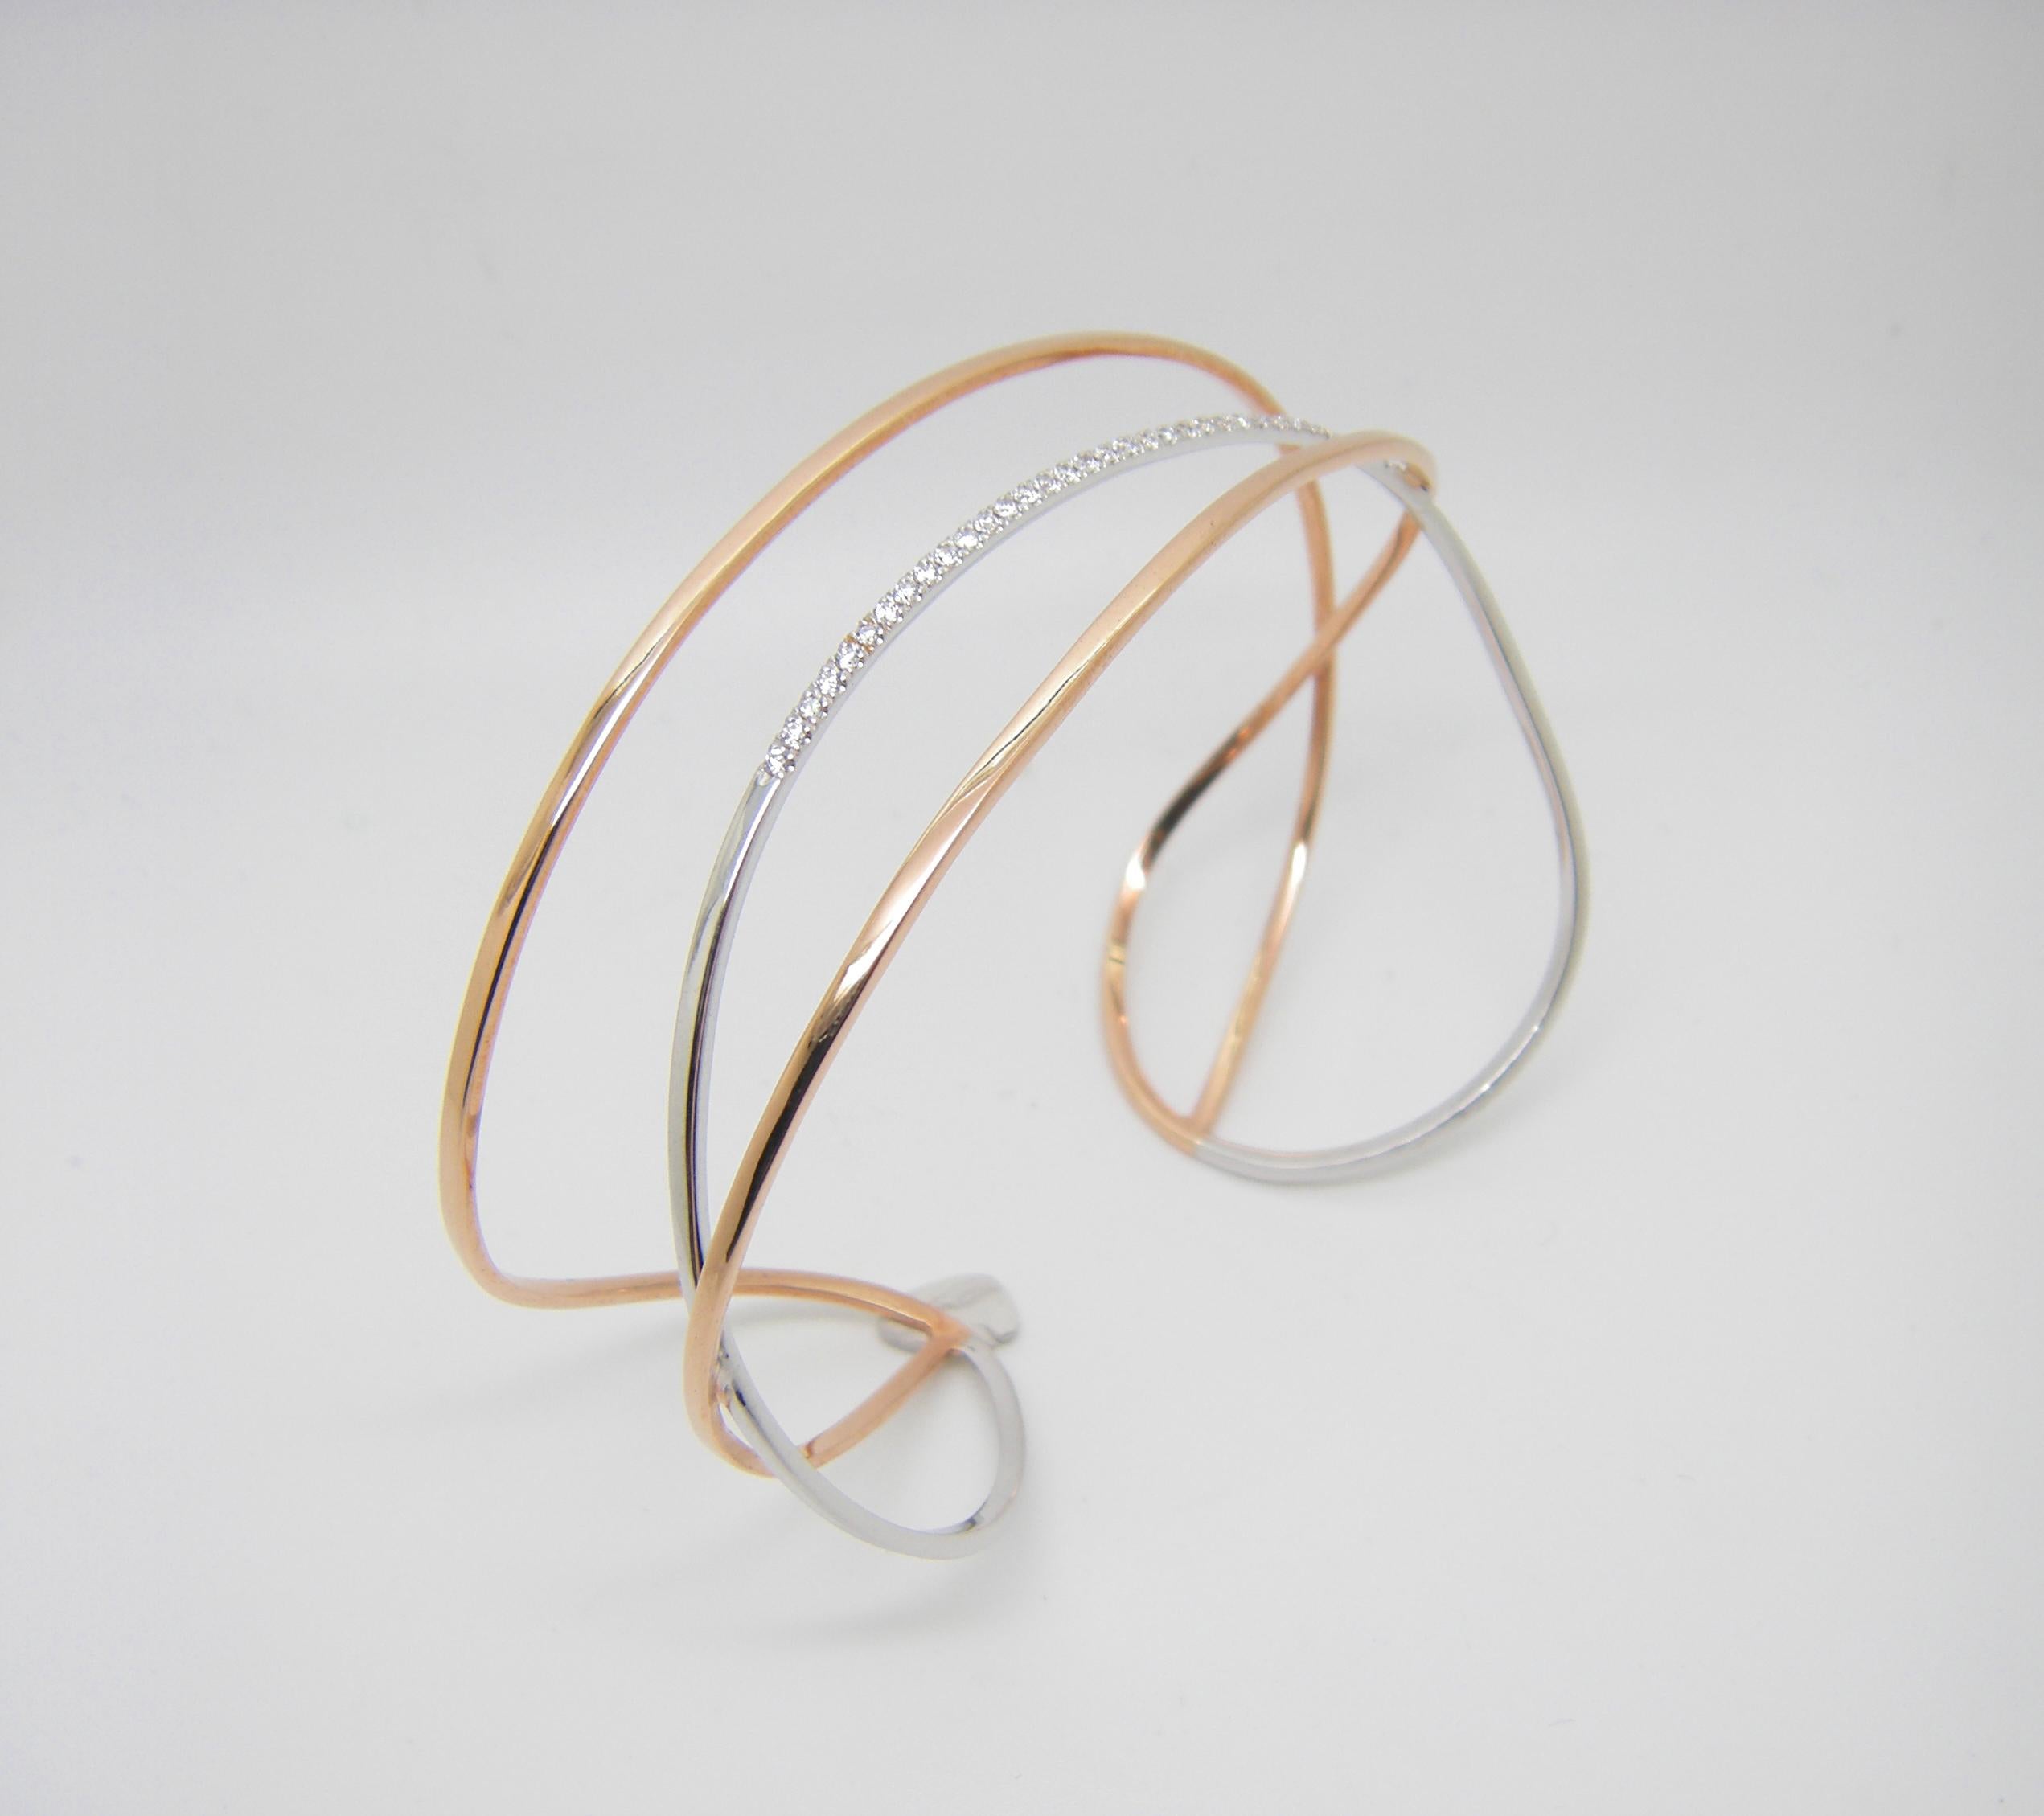 Dieses zweifarbige Designer-Armband von S.Georgios besteht aus 18-karätigem Weiß- und Roségold und ist komplett handgefertigt. Die wunderschöne Manschette ist maßgefertigt und hat weiße Diamanten im Brillantschliff mit einem Gesamtgewicht von 0,30